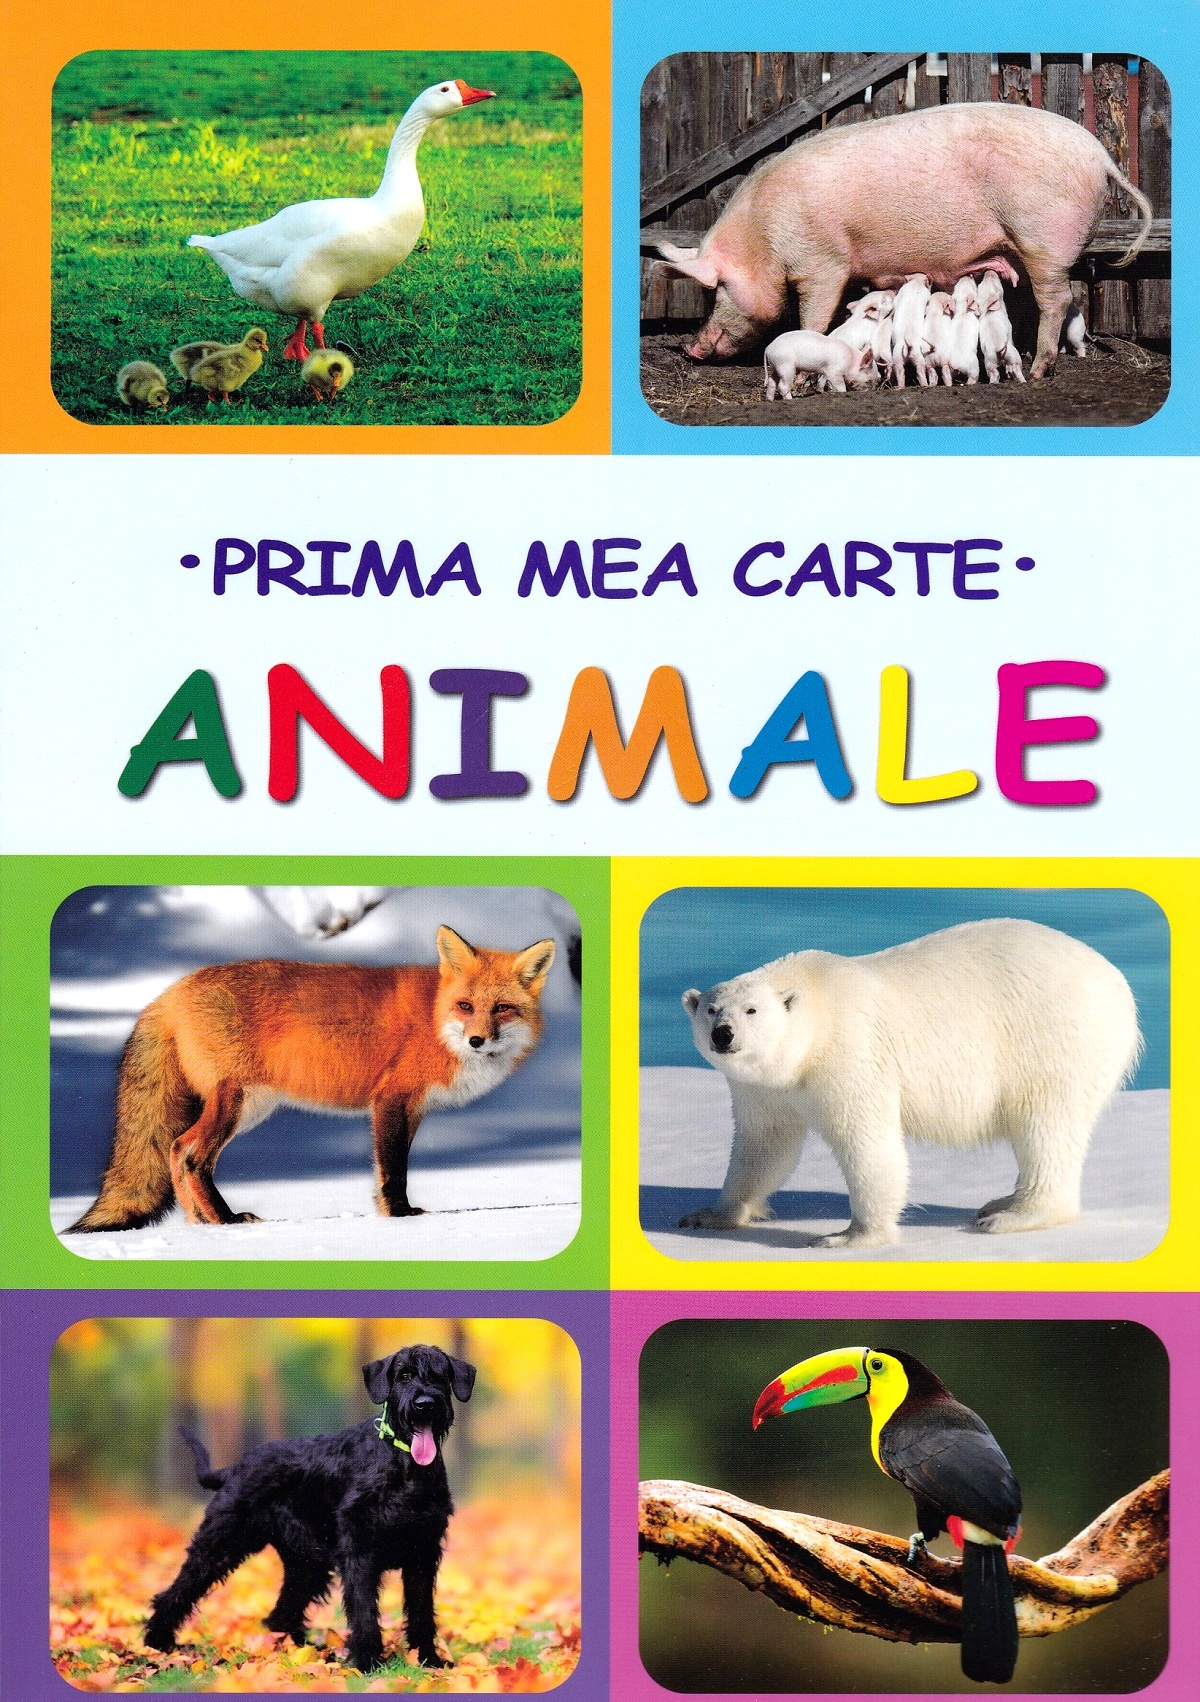 Prima mea carte: Animale